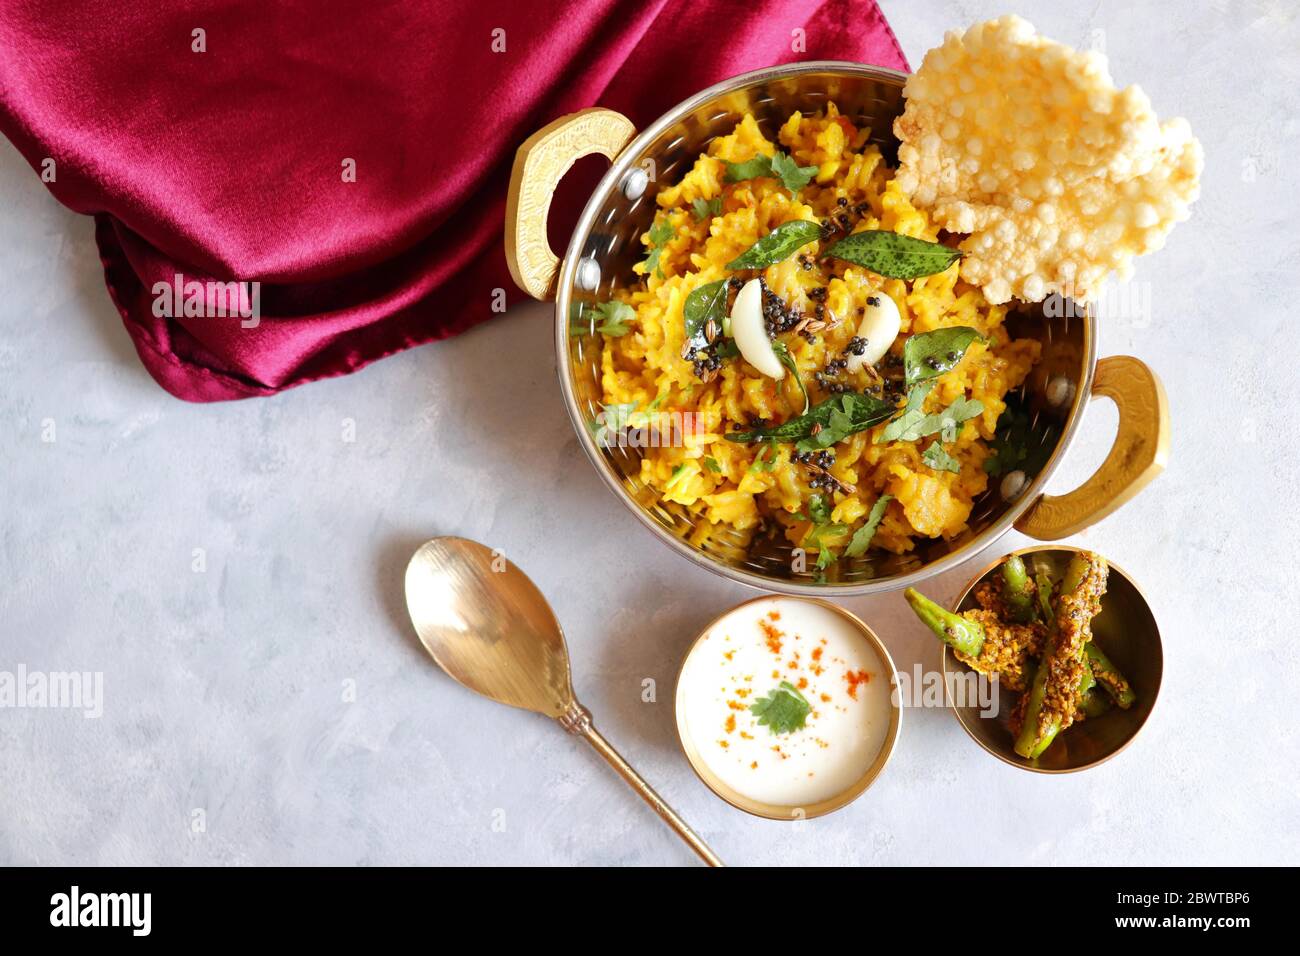 Dal khichadi/Masala Khichdi/daal khichdi tadka è una ricetta indiana sana fatta di lenticchie miste e riso combinato con spezie e verdure. Foto Stock